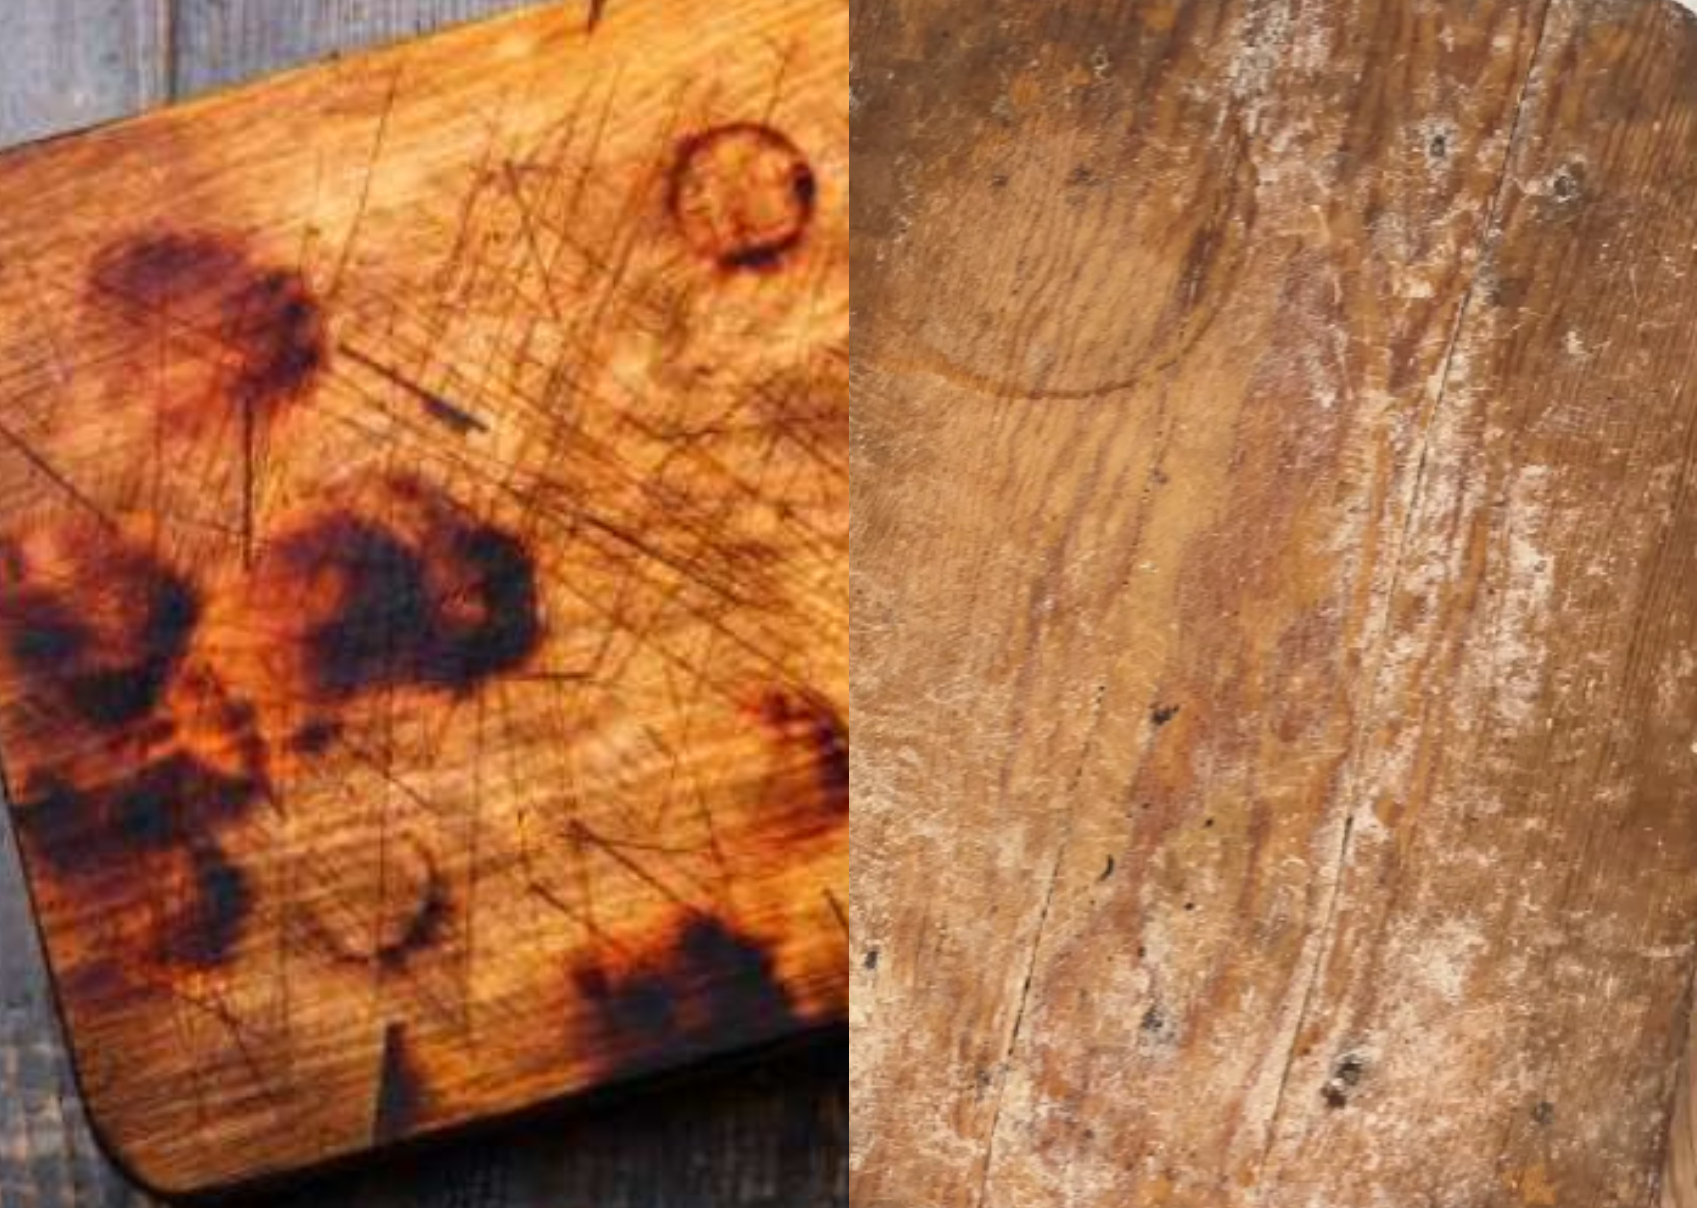 Μικρόβια μούχλα και άσχημες μυρωδιές στο ξύλο κοπής: Πως να το καθαρίσεις να το απολυμάνεις και να το κάνεις σαν καινούριο